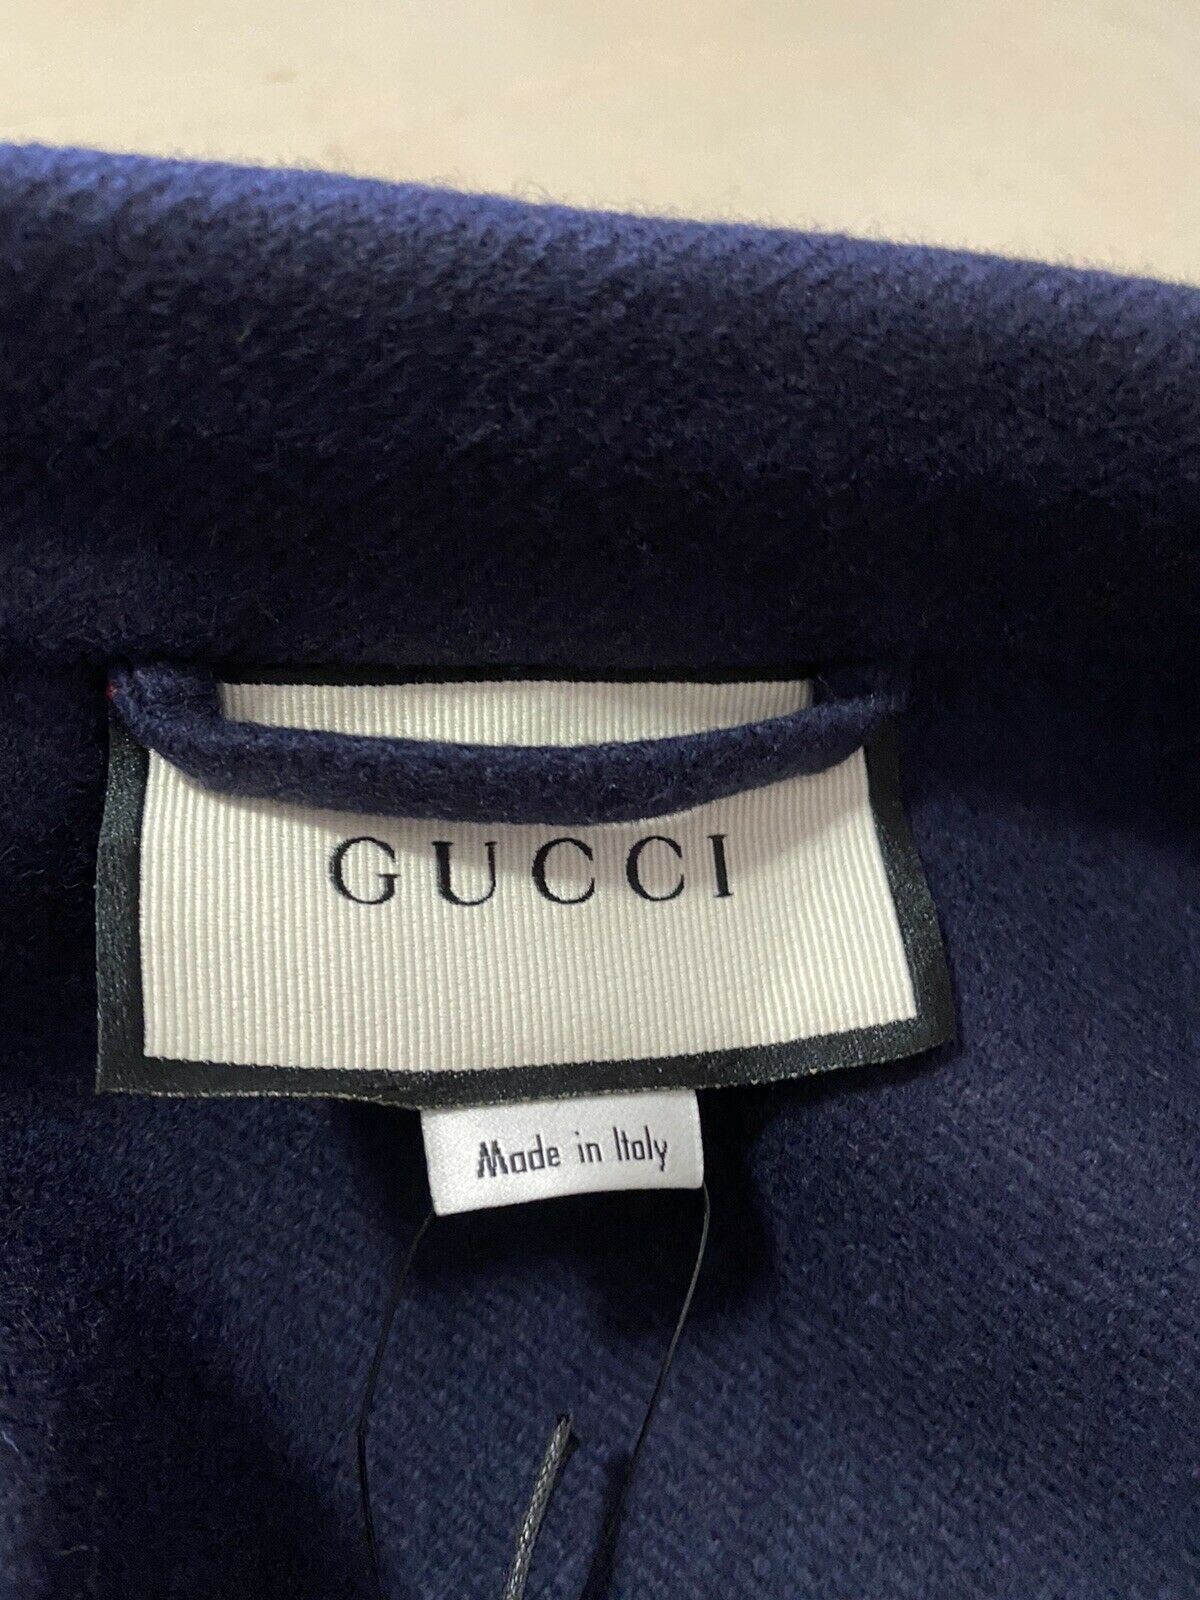 Новое мужское пальто Gucci из верблюжьего волоса, темно-синее, темно-синее, 38 США/48 ЕС, Италия, $4700